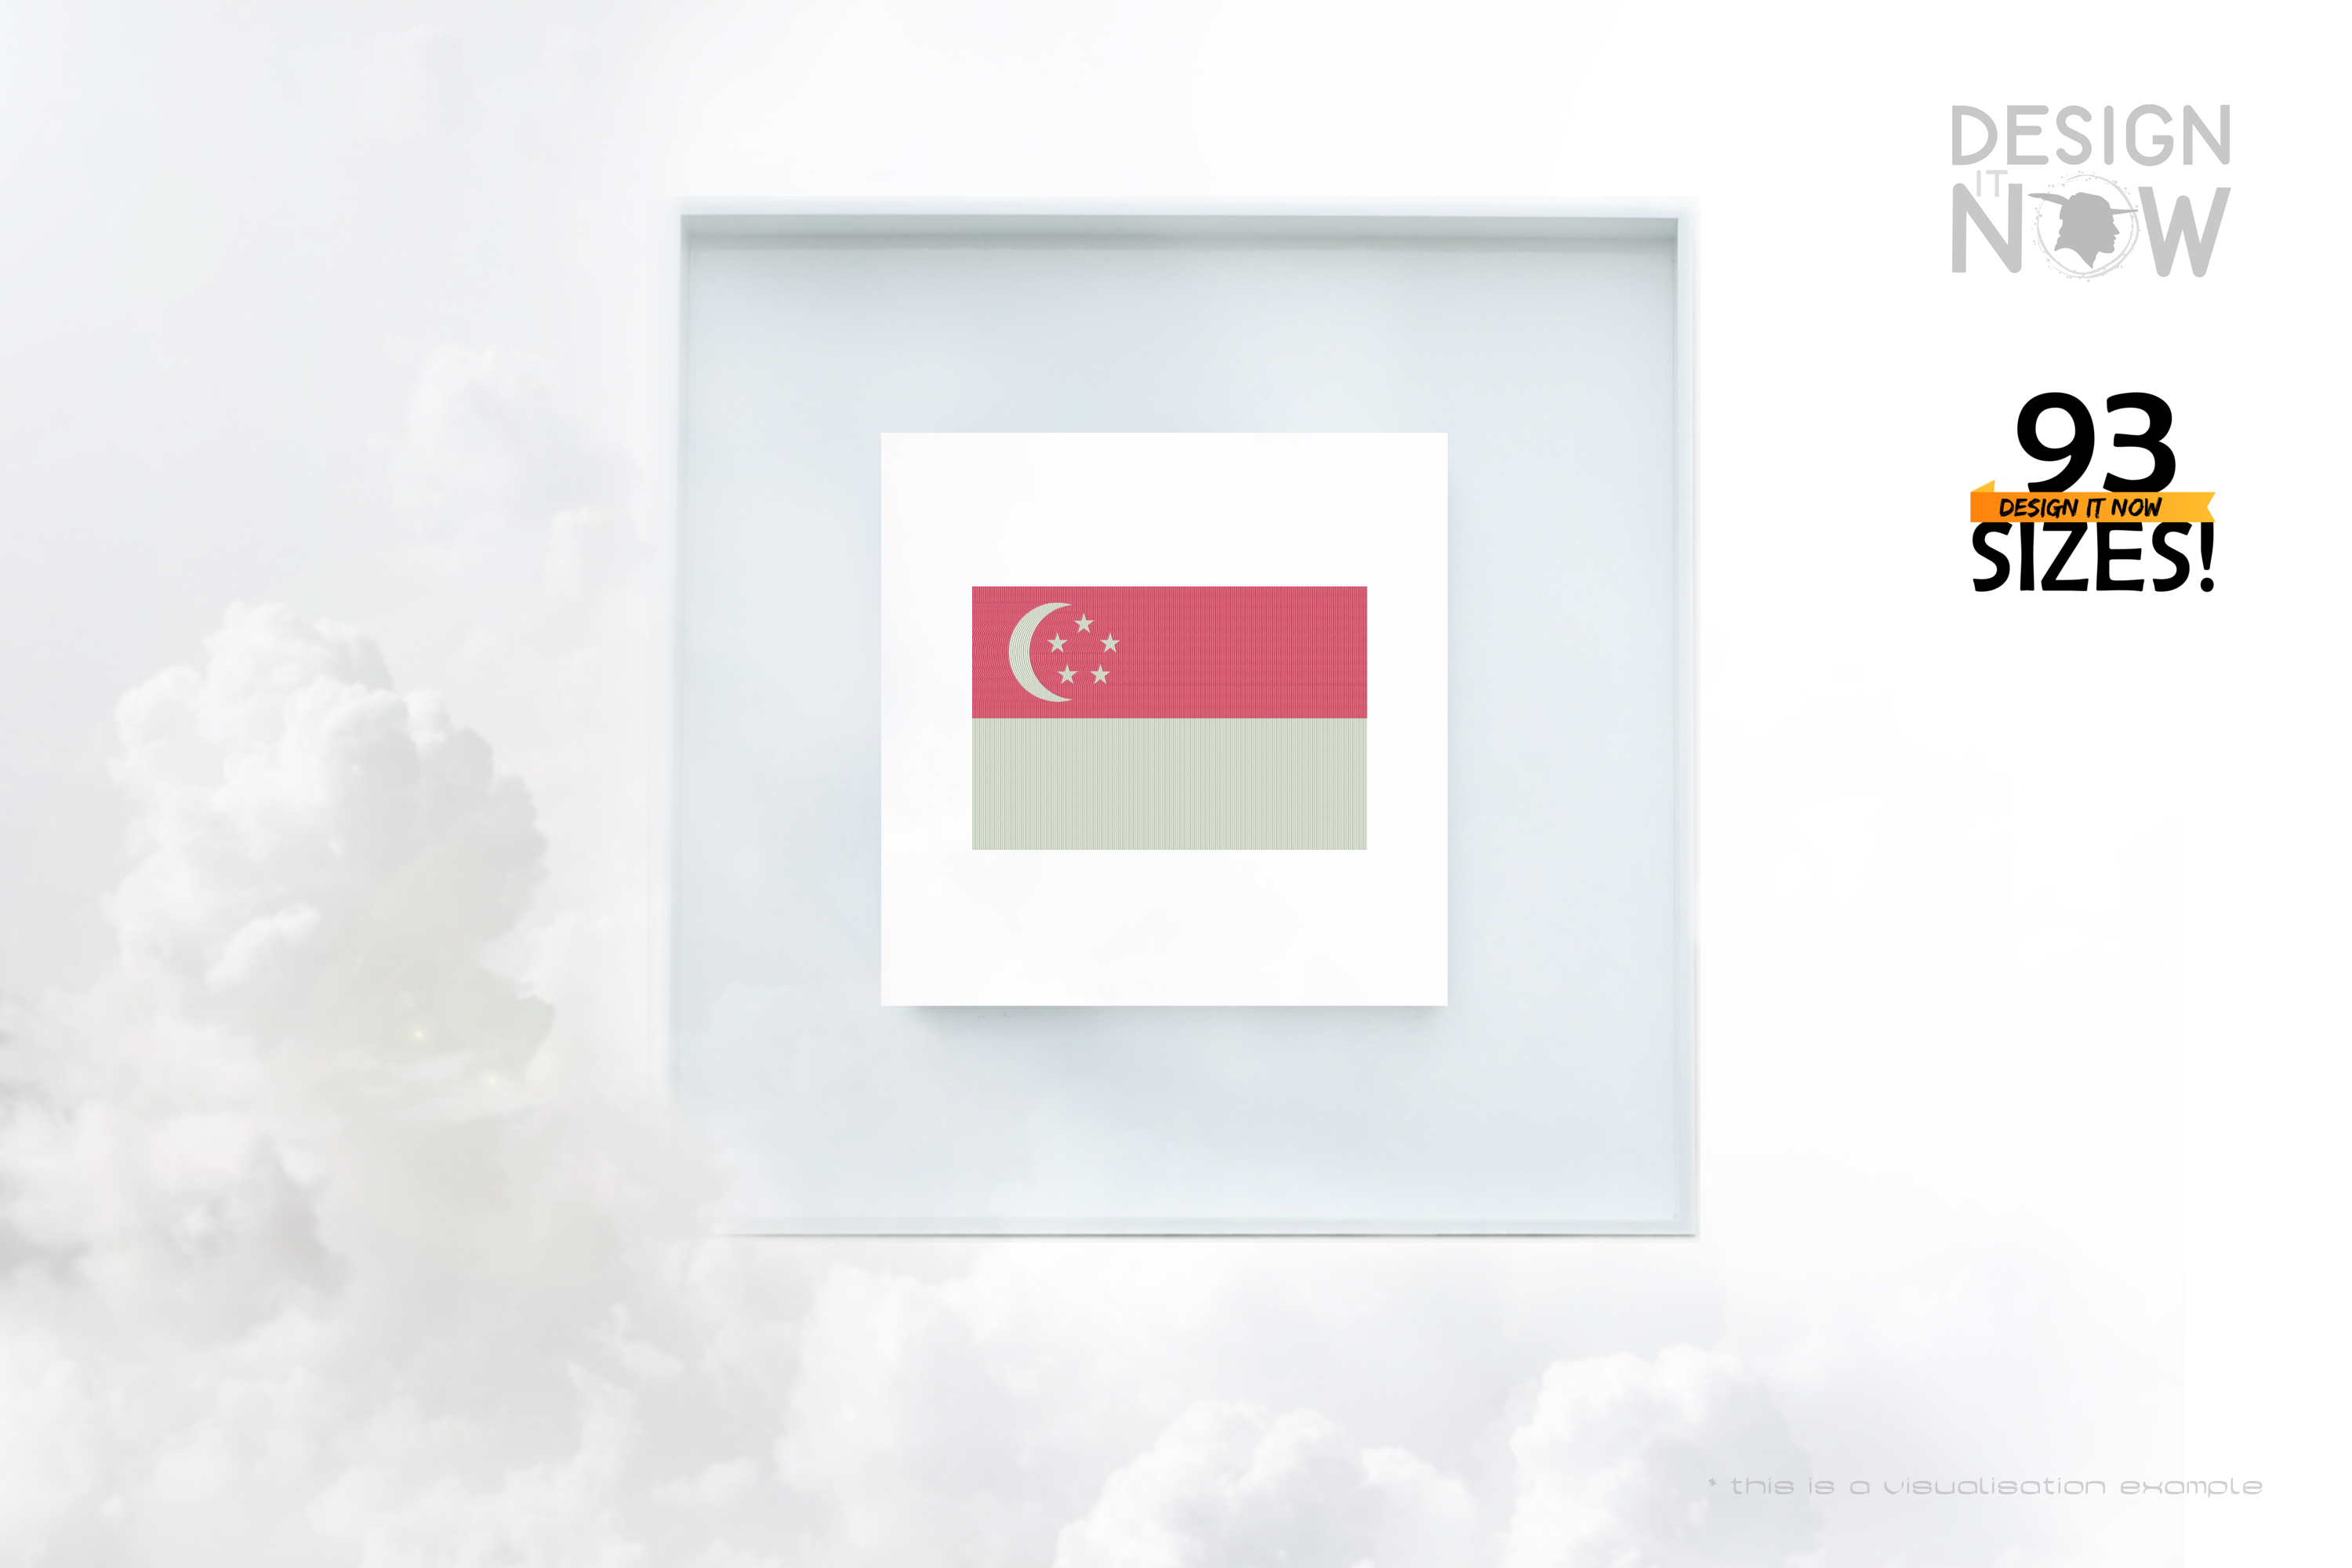 Singapore-Republic of Singapore-Republic of Singapura